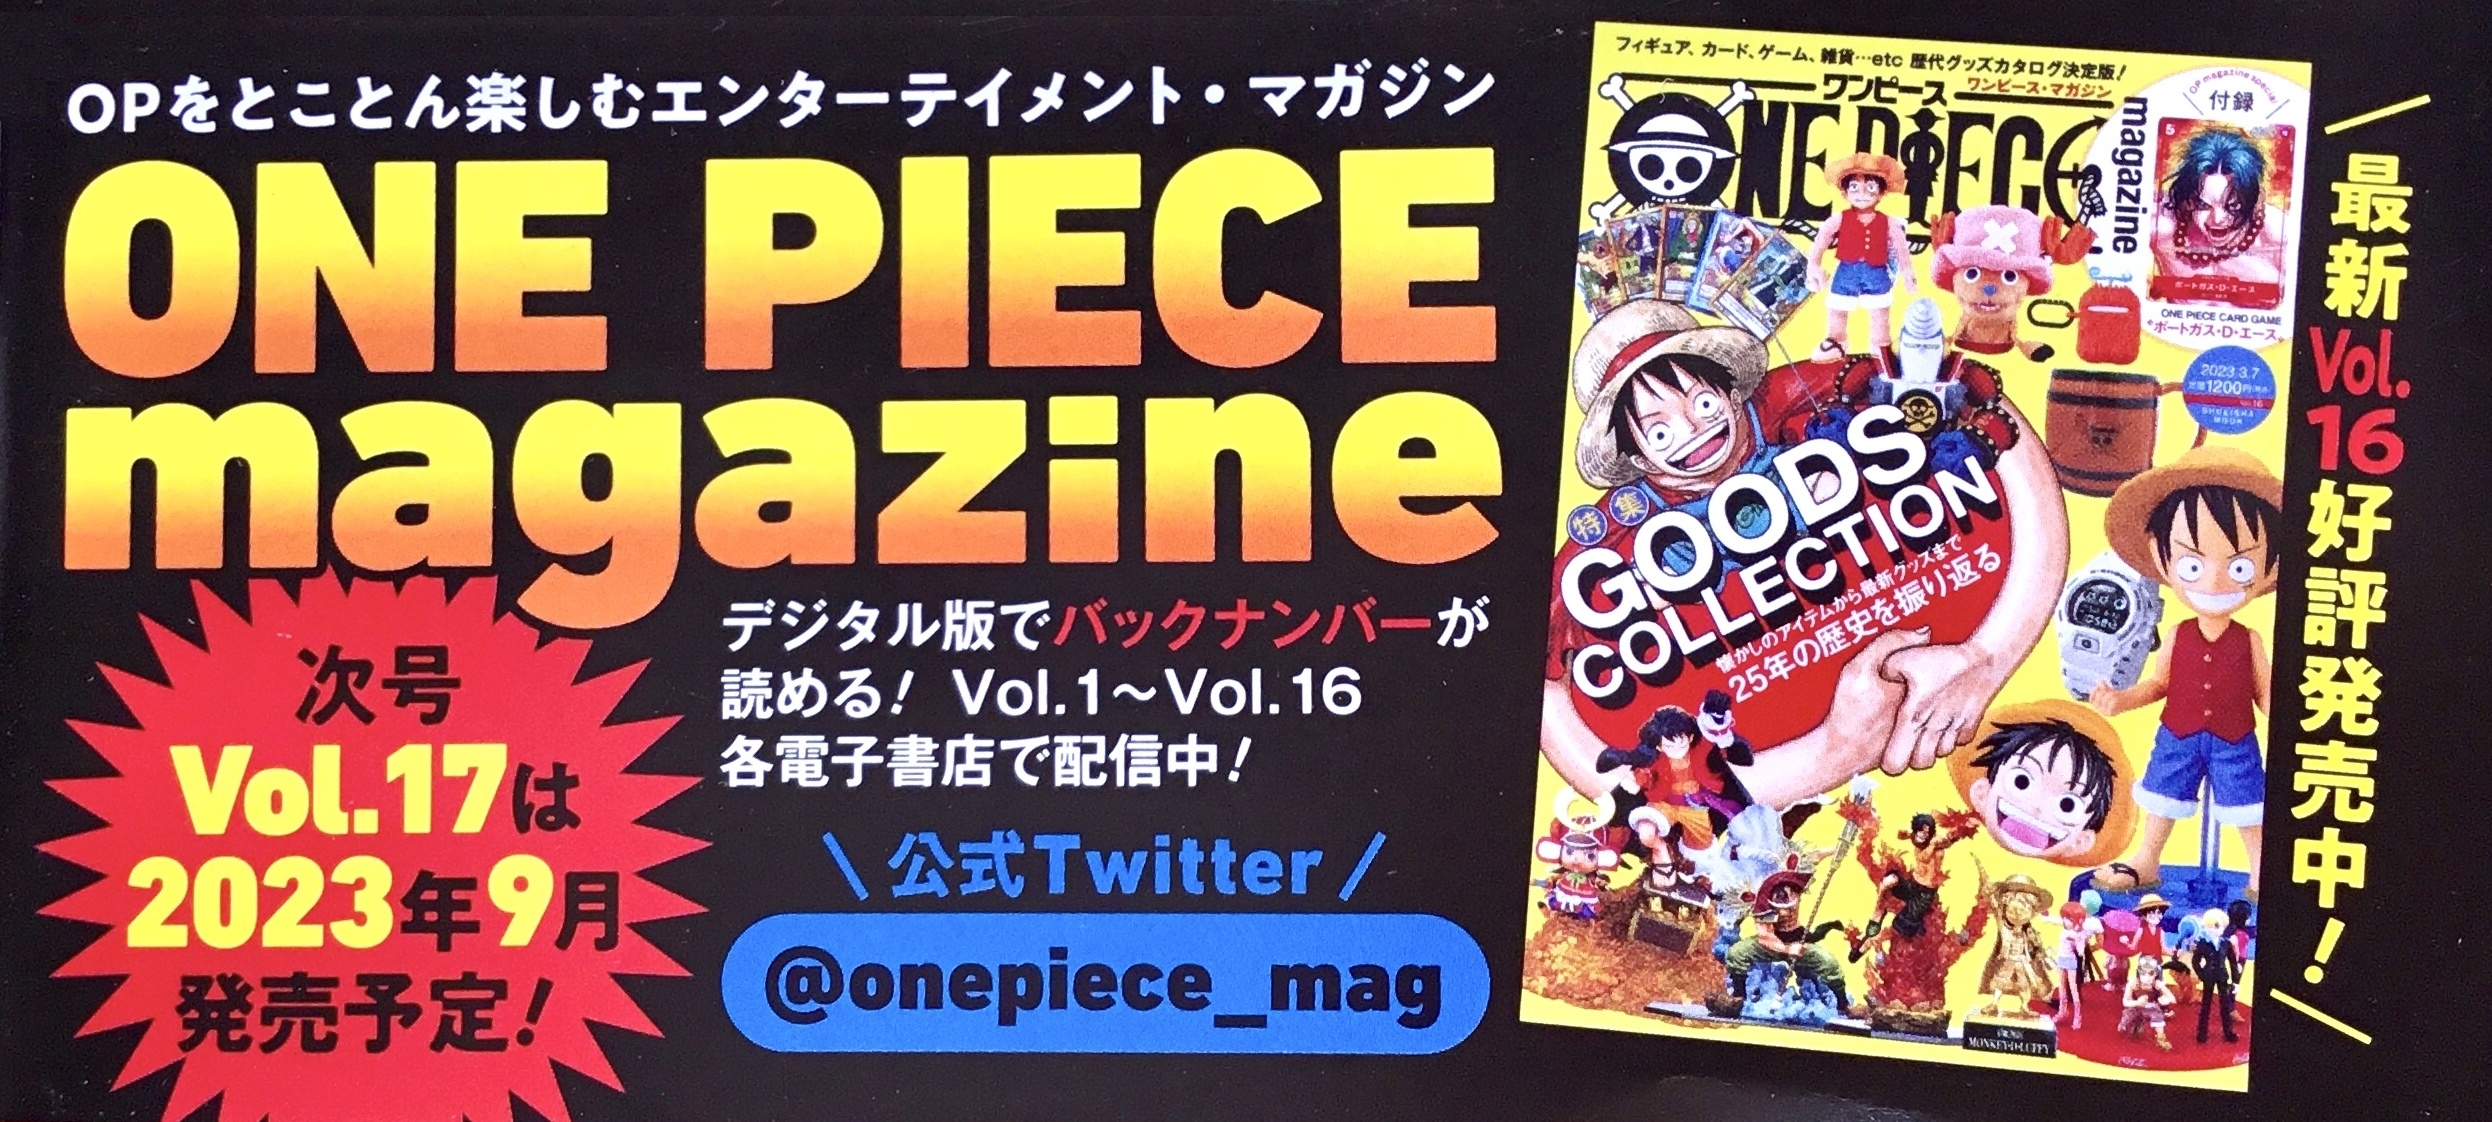 One Piece Magazine Vol. 17 (on sale September 2023) | Worstgen